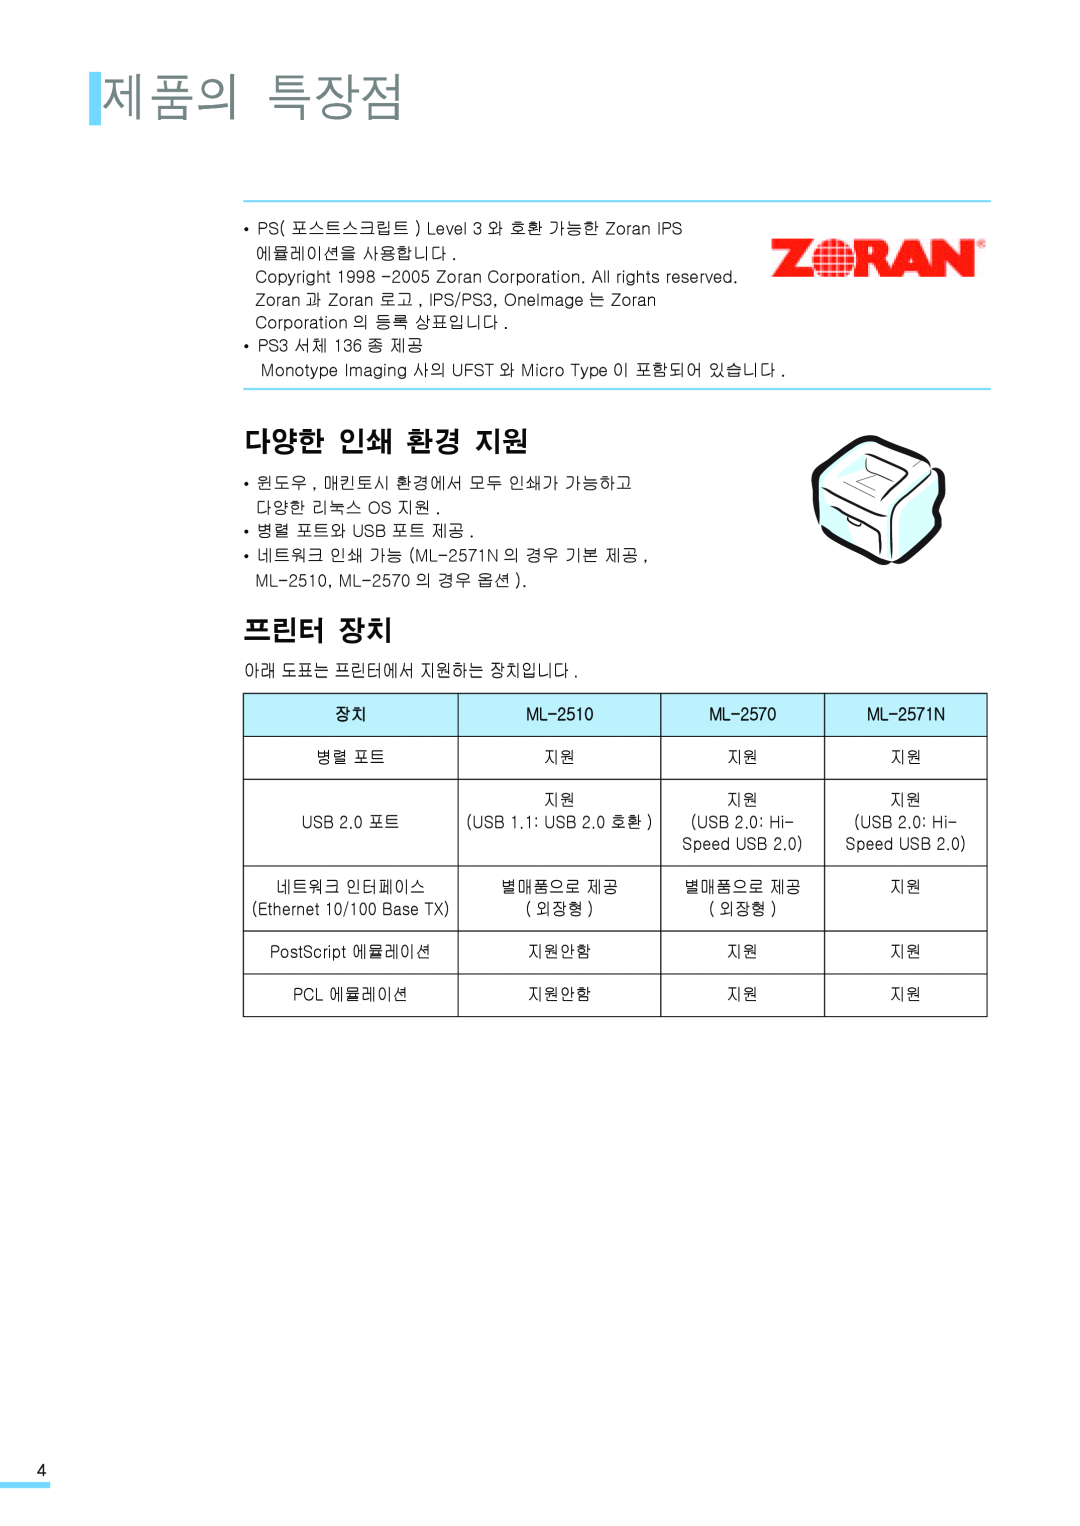 Samsung ML-2571N manual 제품의 특장점, 다양한 인쇄 환경 지원, 프린터 장치, 아래 도표는 프린터에서 지원하는 장치입니다, ML-2510, ML-2570 